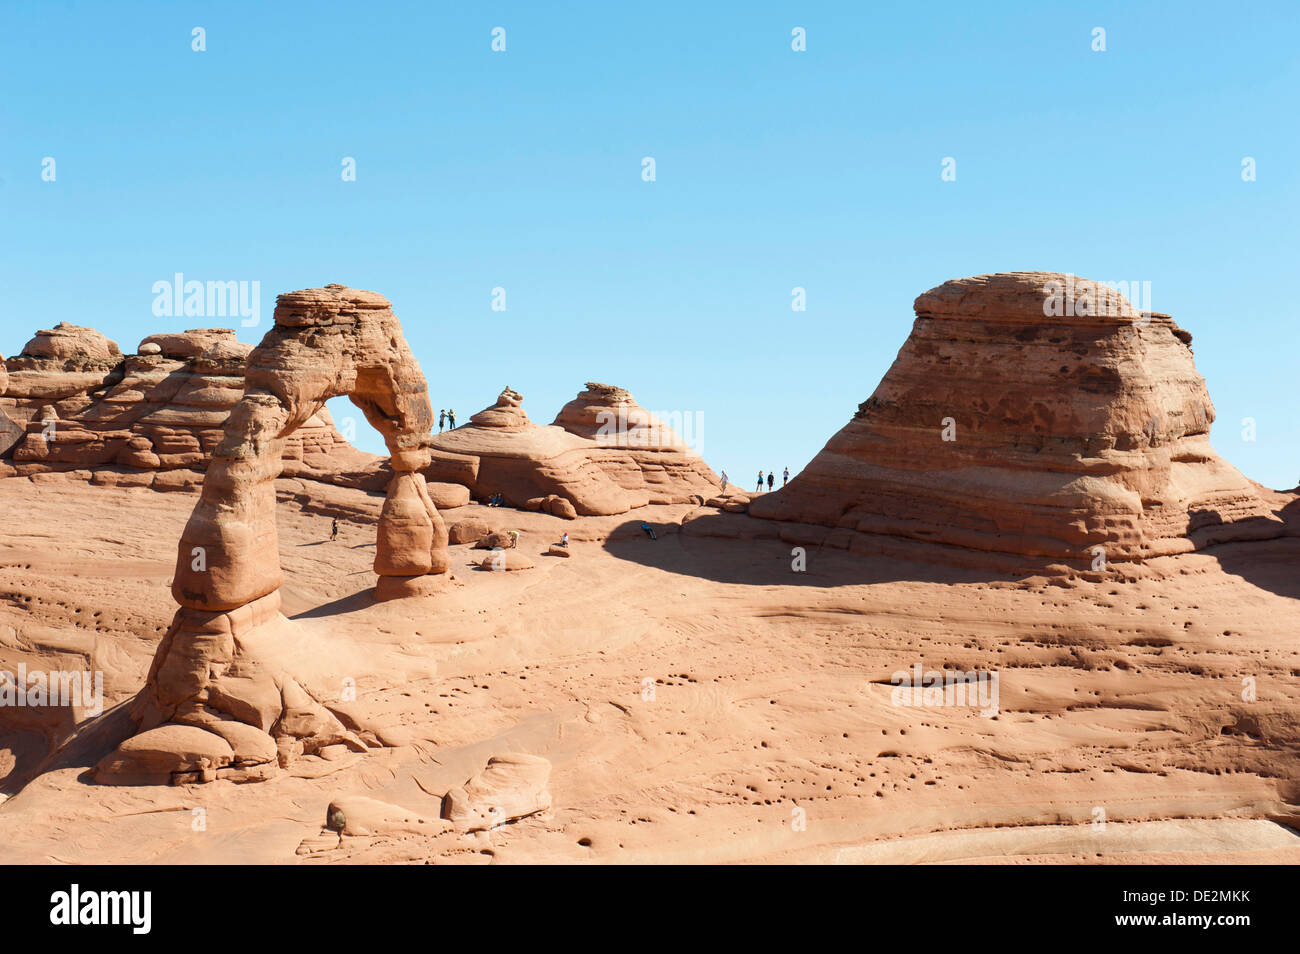 Grès rouge, Delicate Arch, les voûtes en pierre et de formations rocheuses, Arches National Park, Utah, United States de l'Ouest Banque D'Images